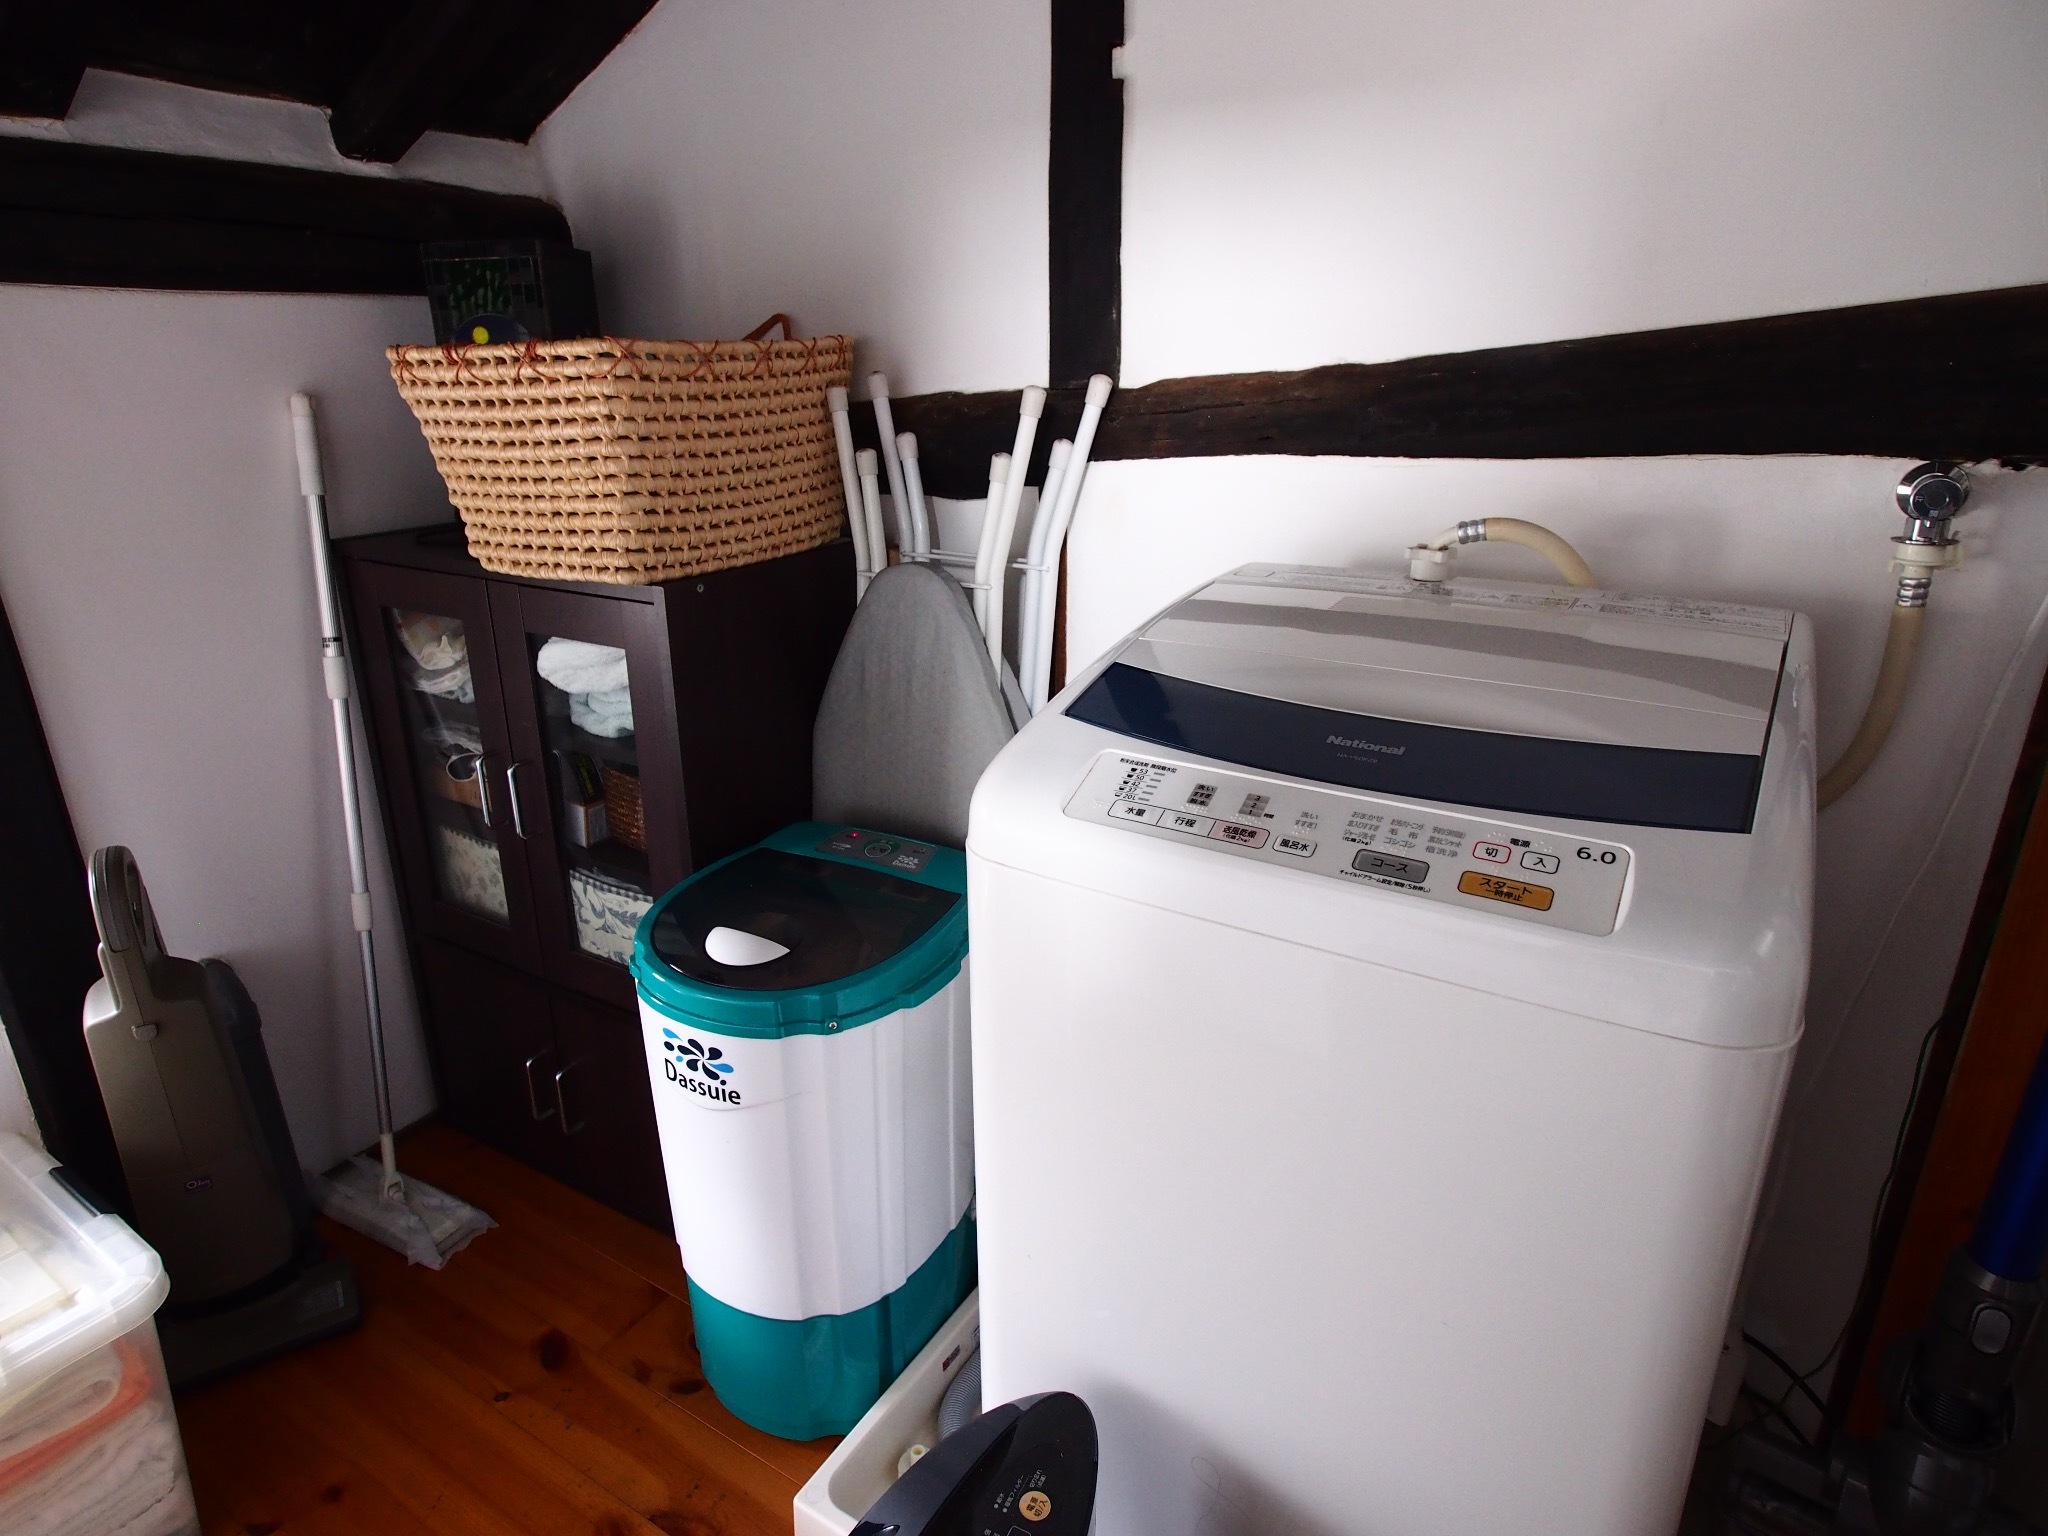 バスルームには脱水洗濯機に加え小物専用の脱水機もあります。